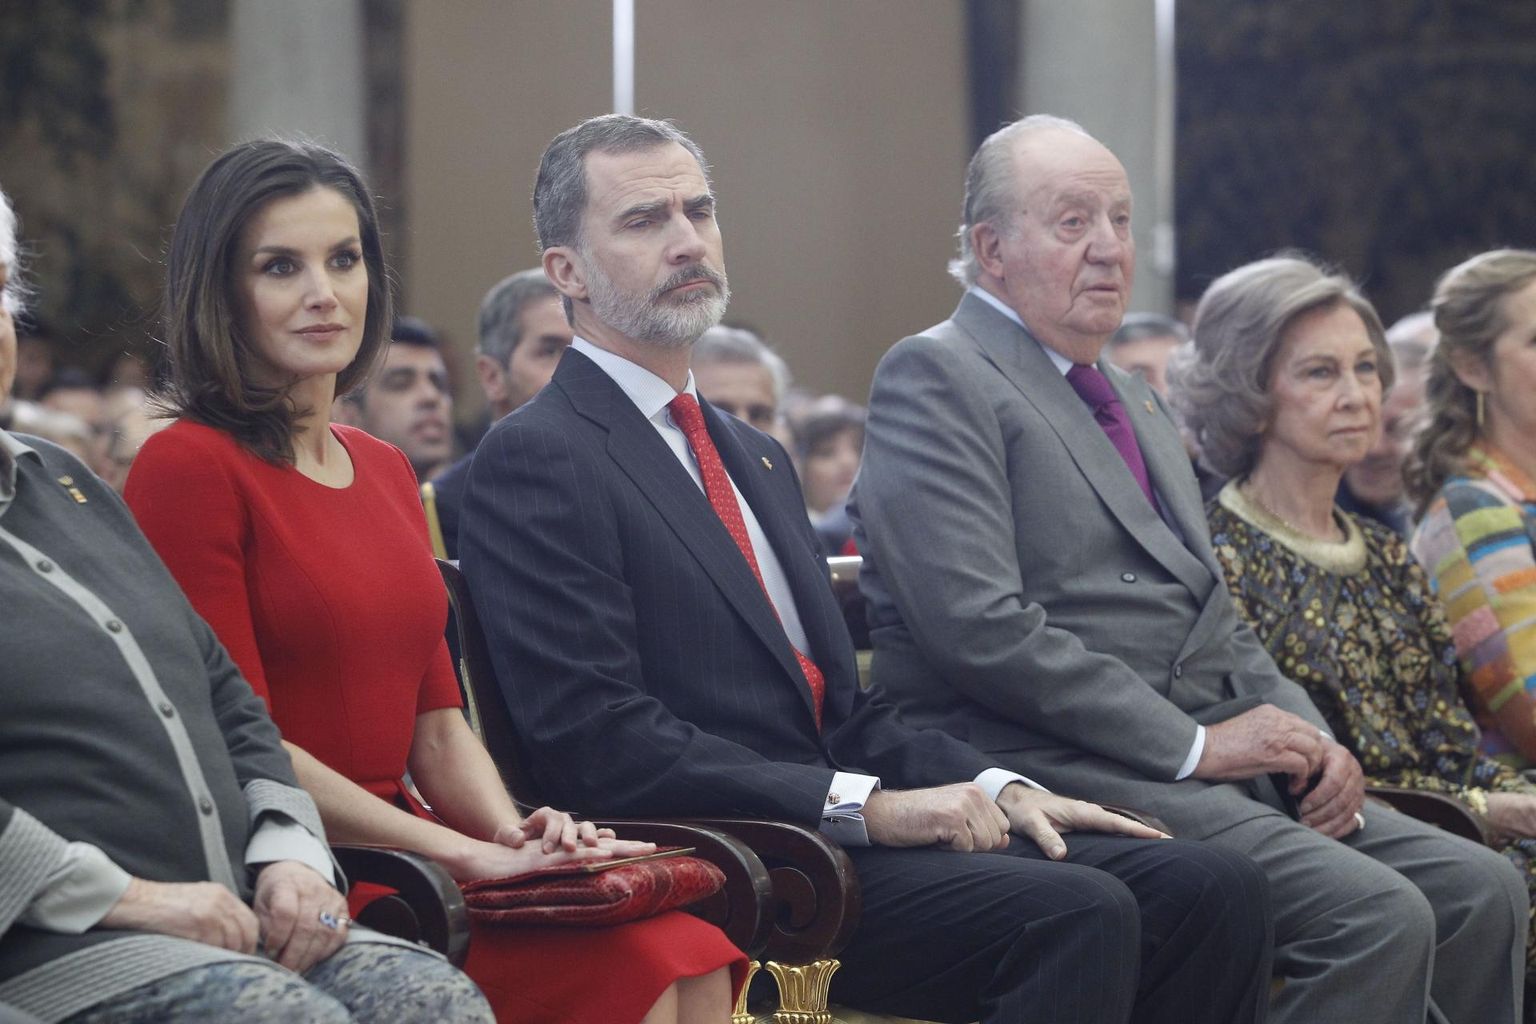 Kuningapere 2019. aasta jaanuaris Madridis spordiauhindade üleandmisel: vasakult kuninganna Letizia, kuningas Felipe VI, eninde kuningas Juan Carlos ja endine kuninganna Sofia.